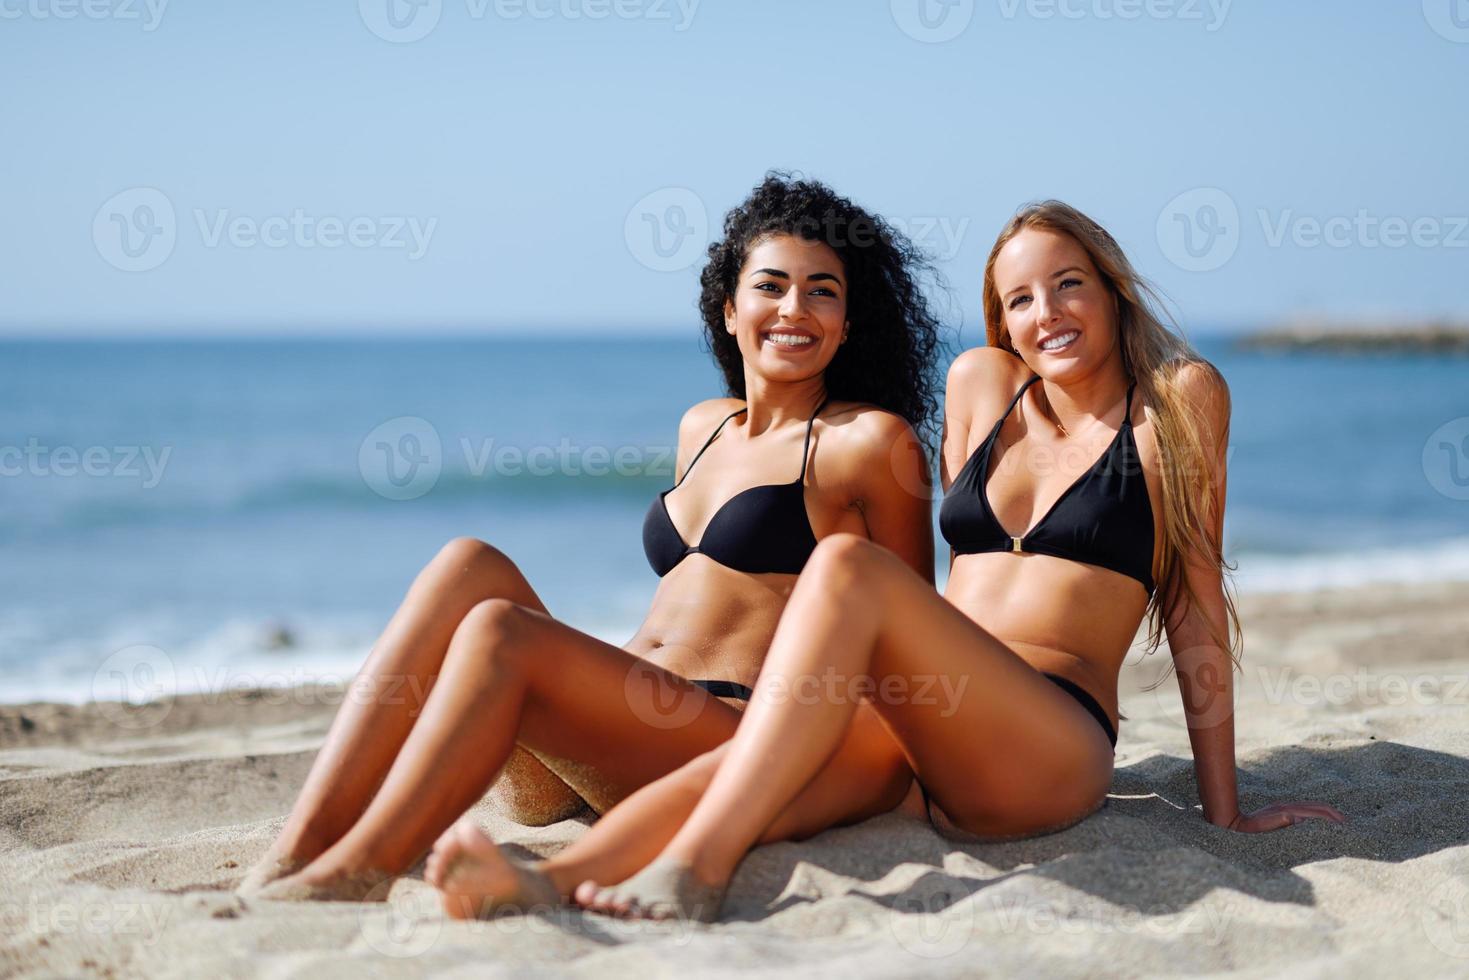 zwei junge Frauen mit schönen Körpern in Badebekleidung an einem tropischen Strand foto